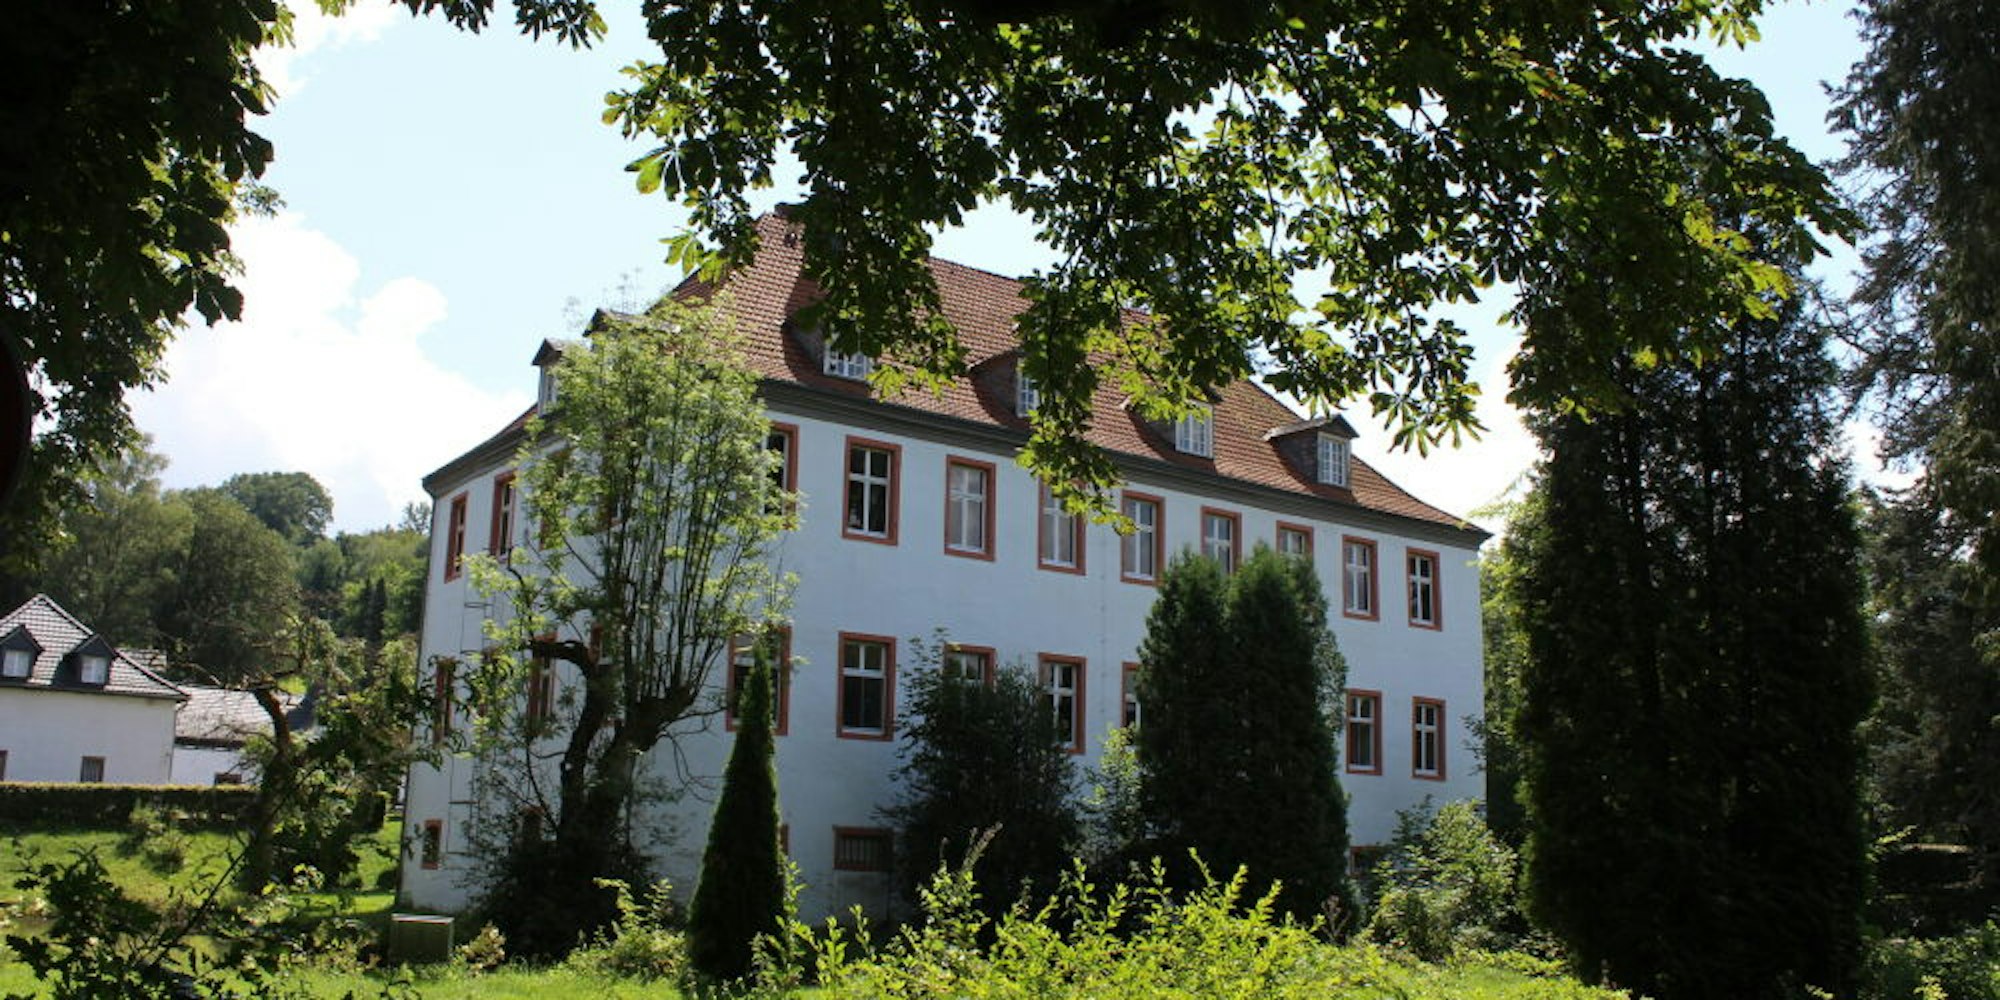 Schloss Georghausen, hier von der Rückseite, war in den 1950er Jahren ein bekanntes Hotel-Restaurant,